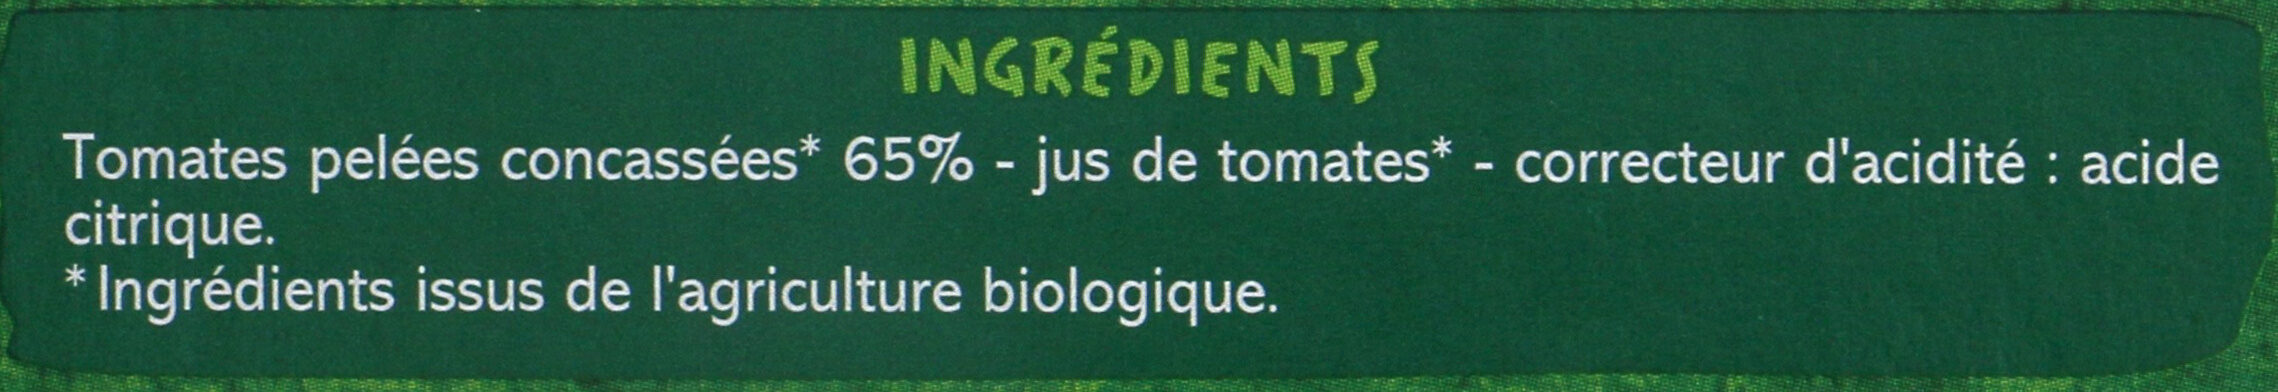 Tomates Concassées - Ingredients - fr